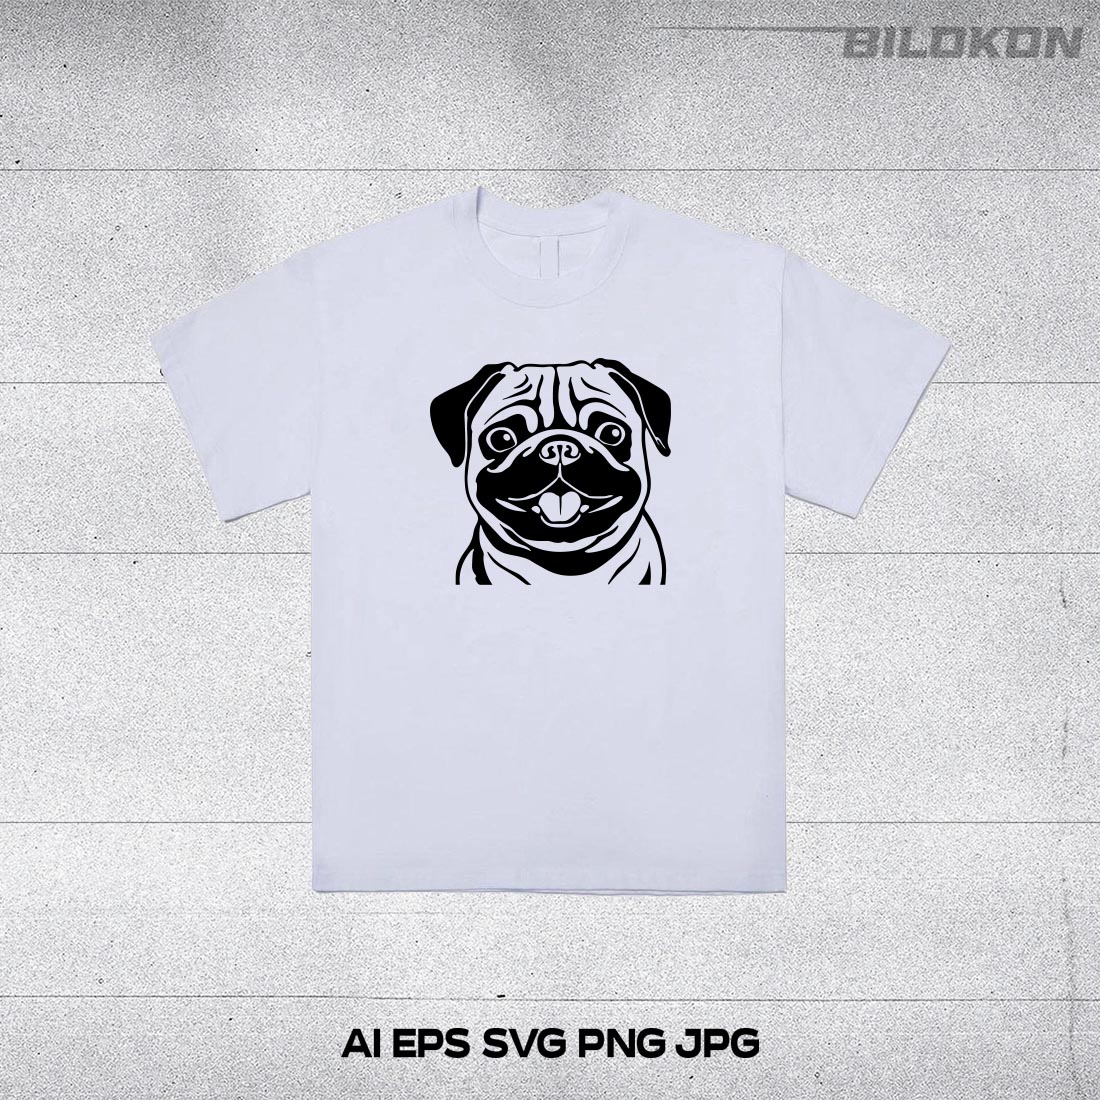 Pug dog head, SVG, Vector, Illustration, SVG Bundle preview image.